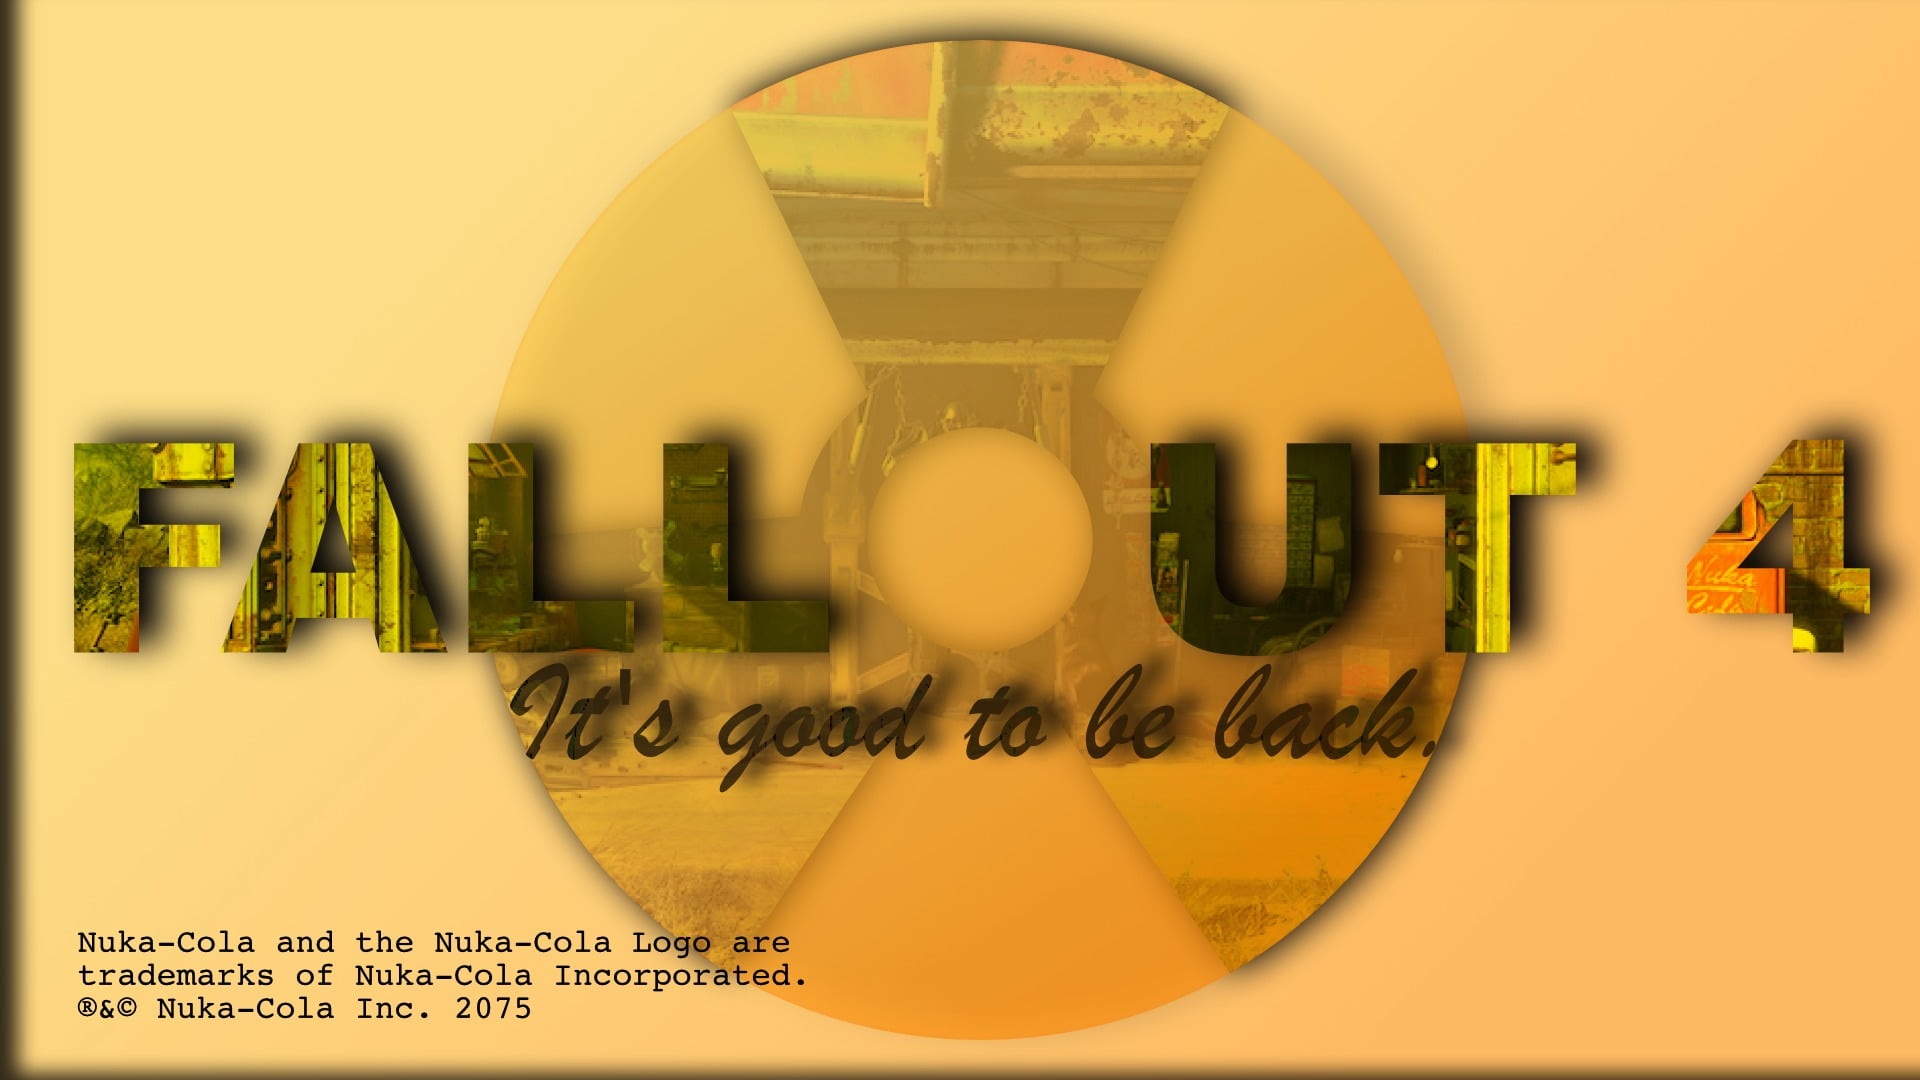 Fallout 4 banner, artwork, digital art, video games, text, yellow